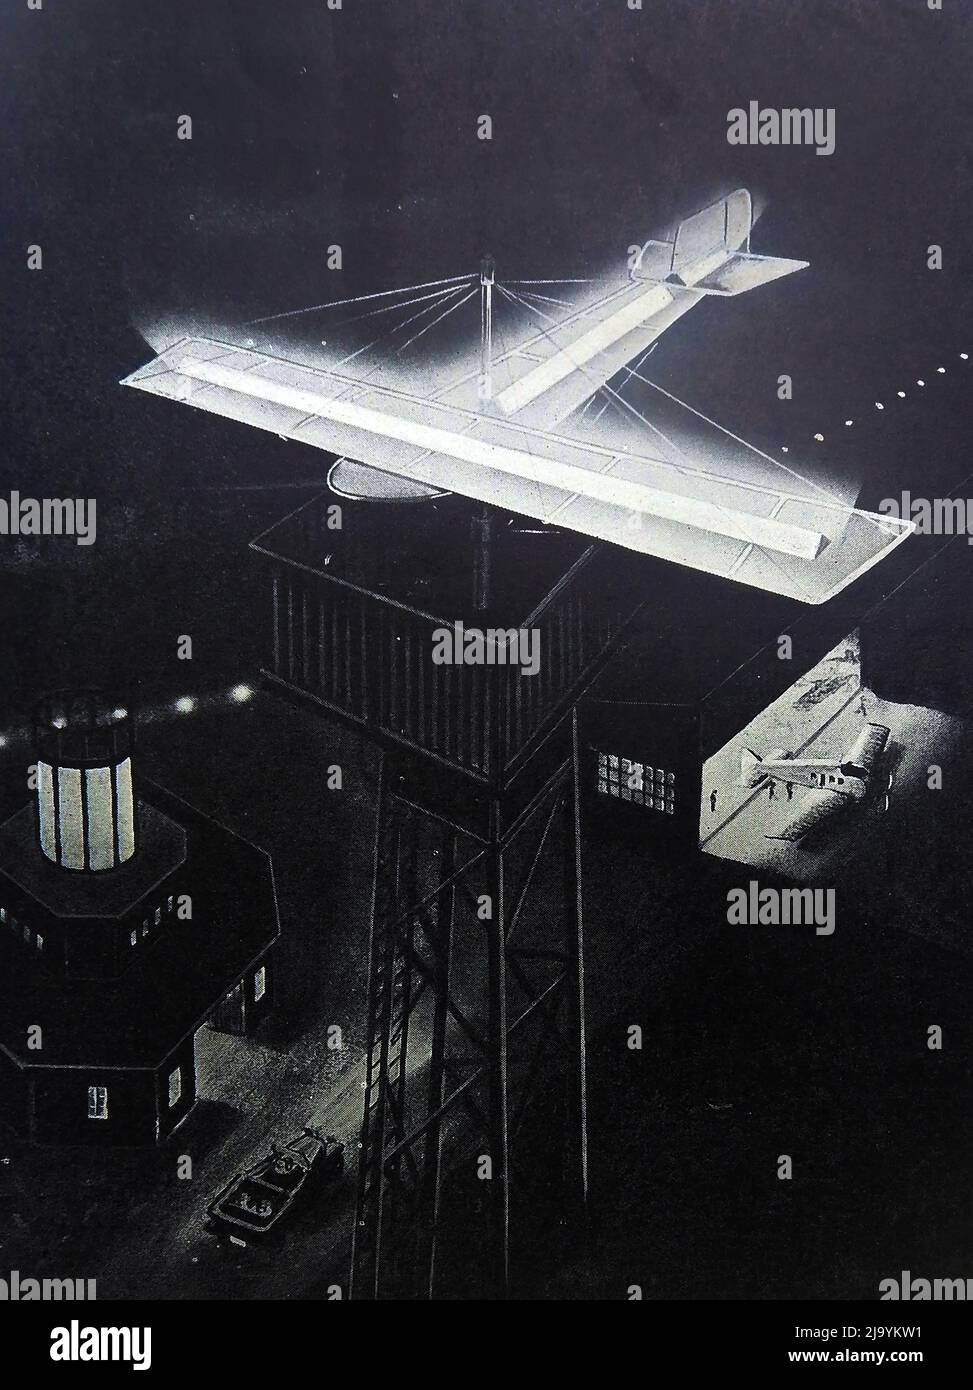 Eine alte Illustration, die einen beleuchteten, flugförmigen Wettervorflug auf dem Berliner Flugplatz/Flughafen zeigt, um Flugzeuge bei der Landung in der Nacht zu unterstützen --------- Eine alte Illustration, die eine beleuchtete flugzeugförderte Wetterfahne auf dem Berliner Flughafen zeigt, um Flugzeuge bei der Landung bei Nacht zu unterstützen. Stockfoto